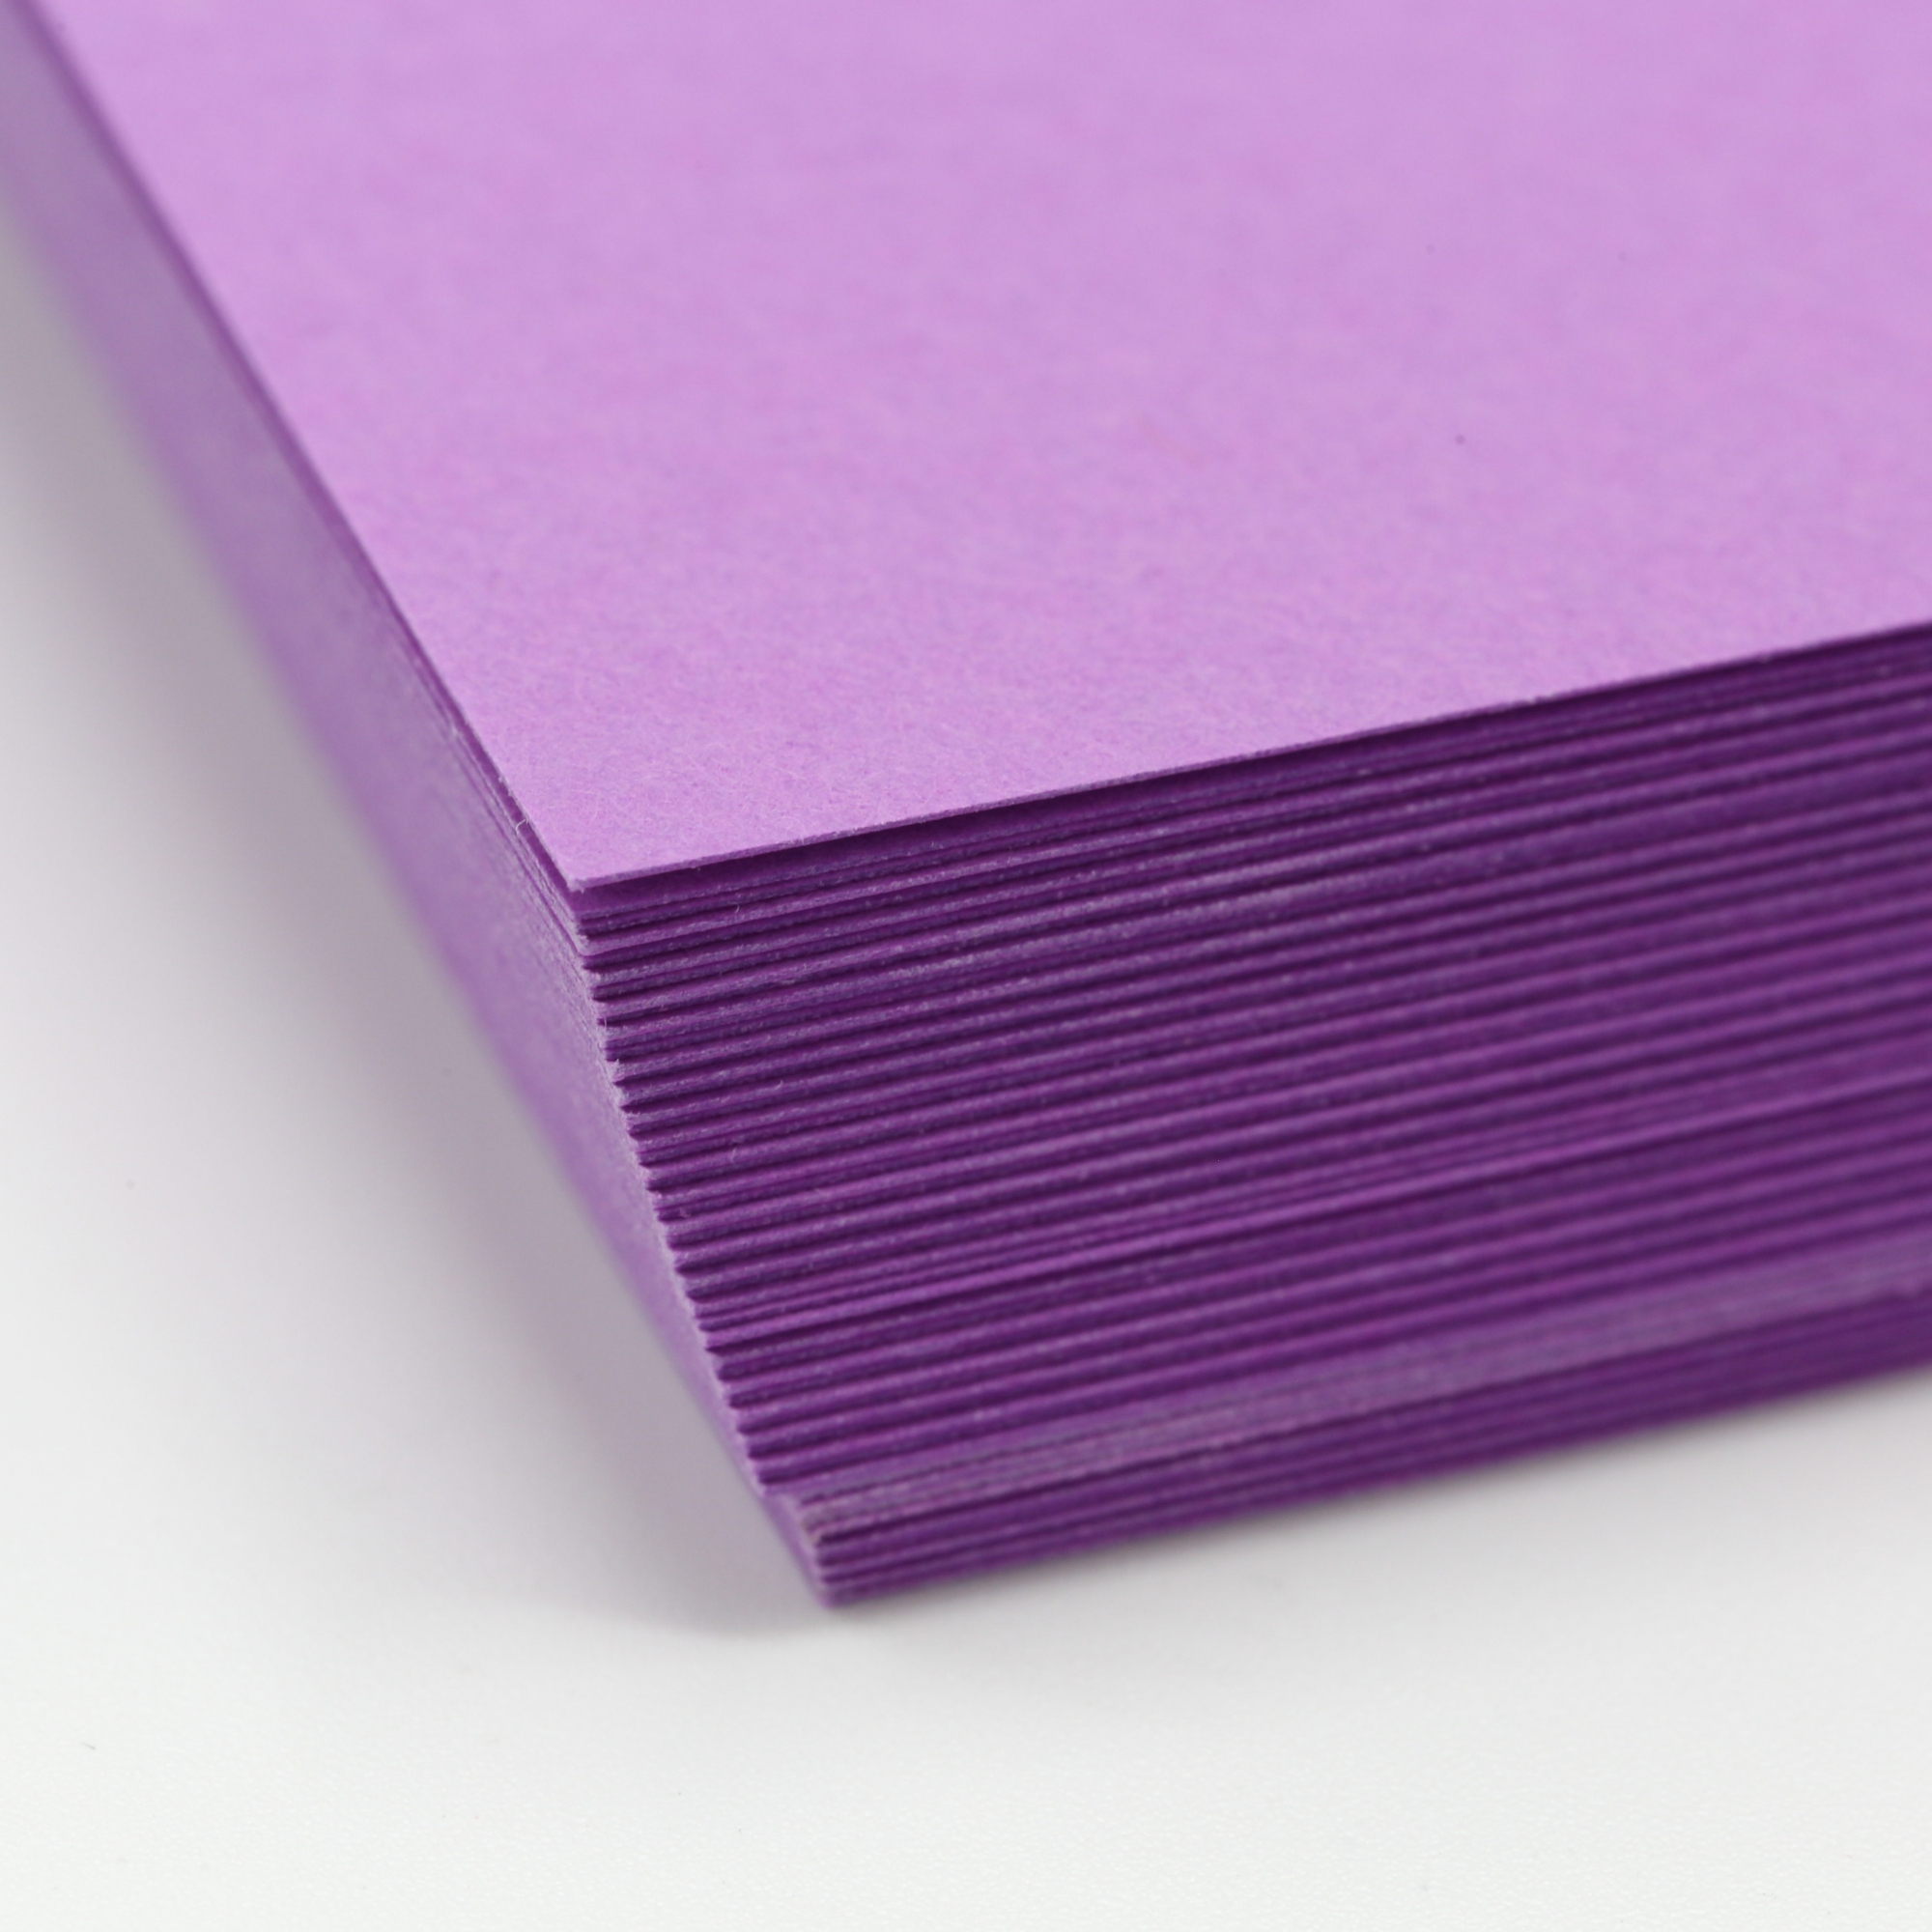 Venus Violet Purple Paper - 8 1/2 x 11 60lb Text - LCI Paper